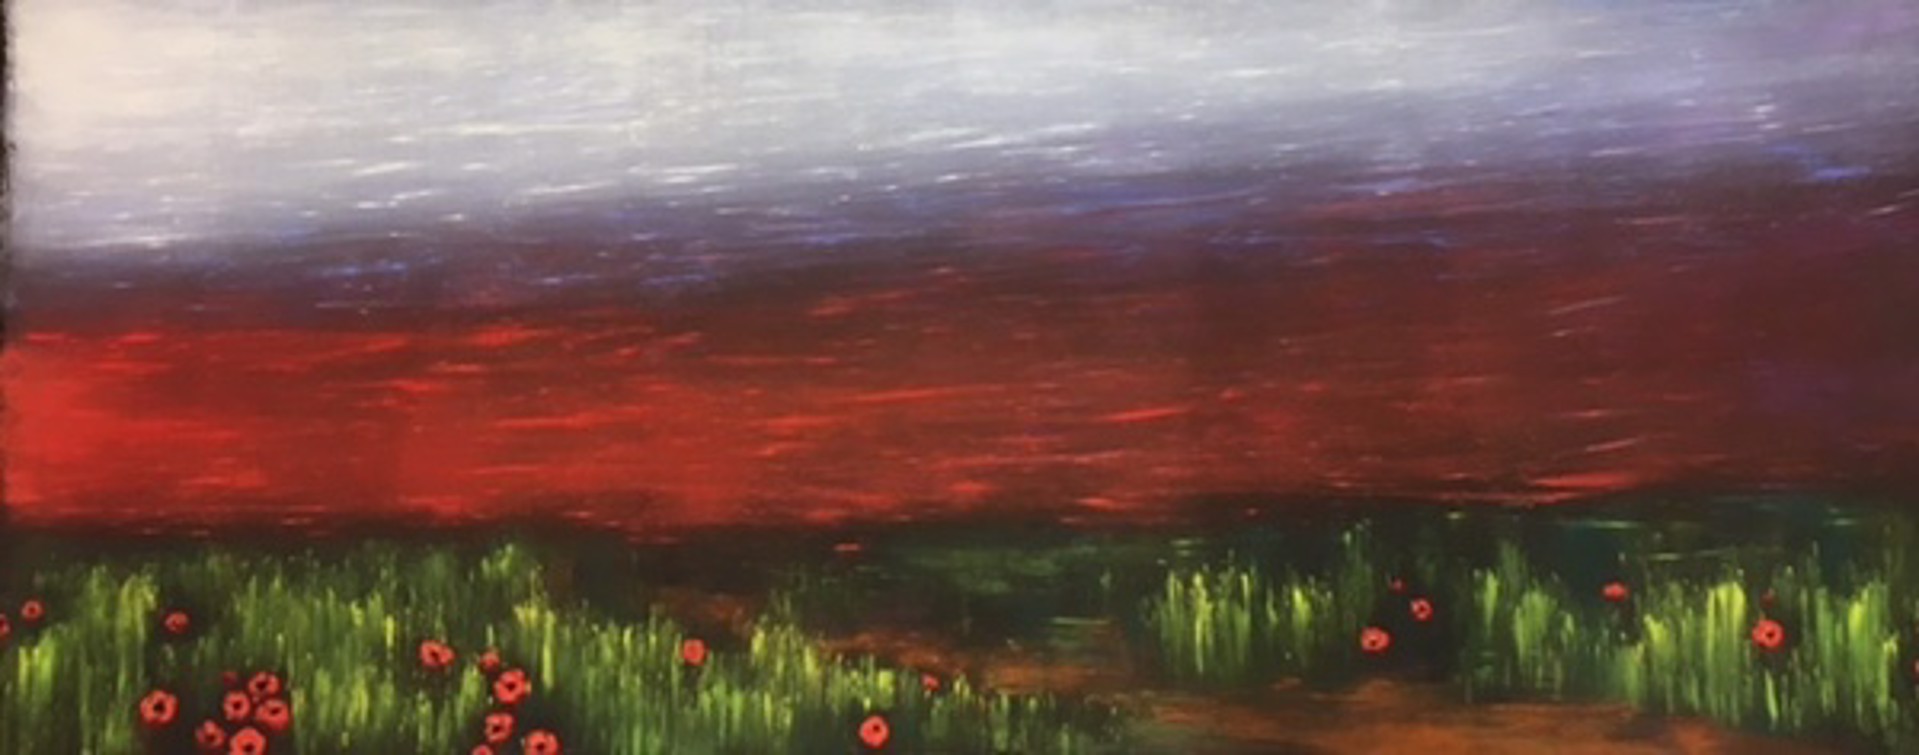 Crimson Sky by Julie Hansen